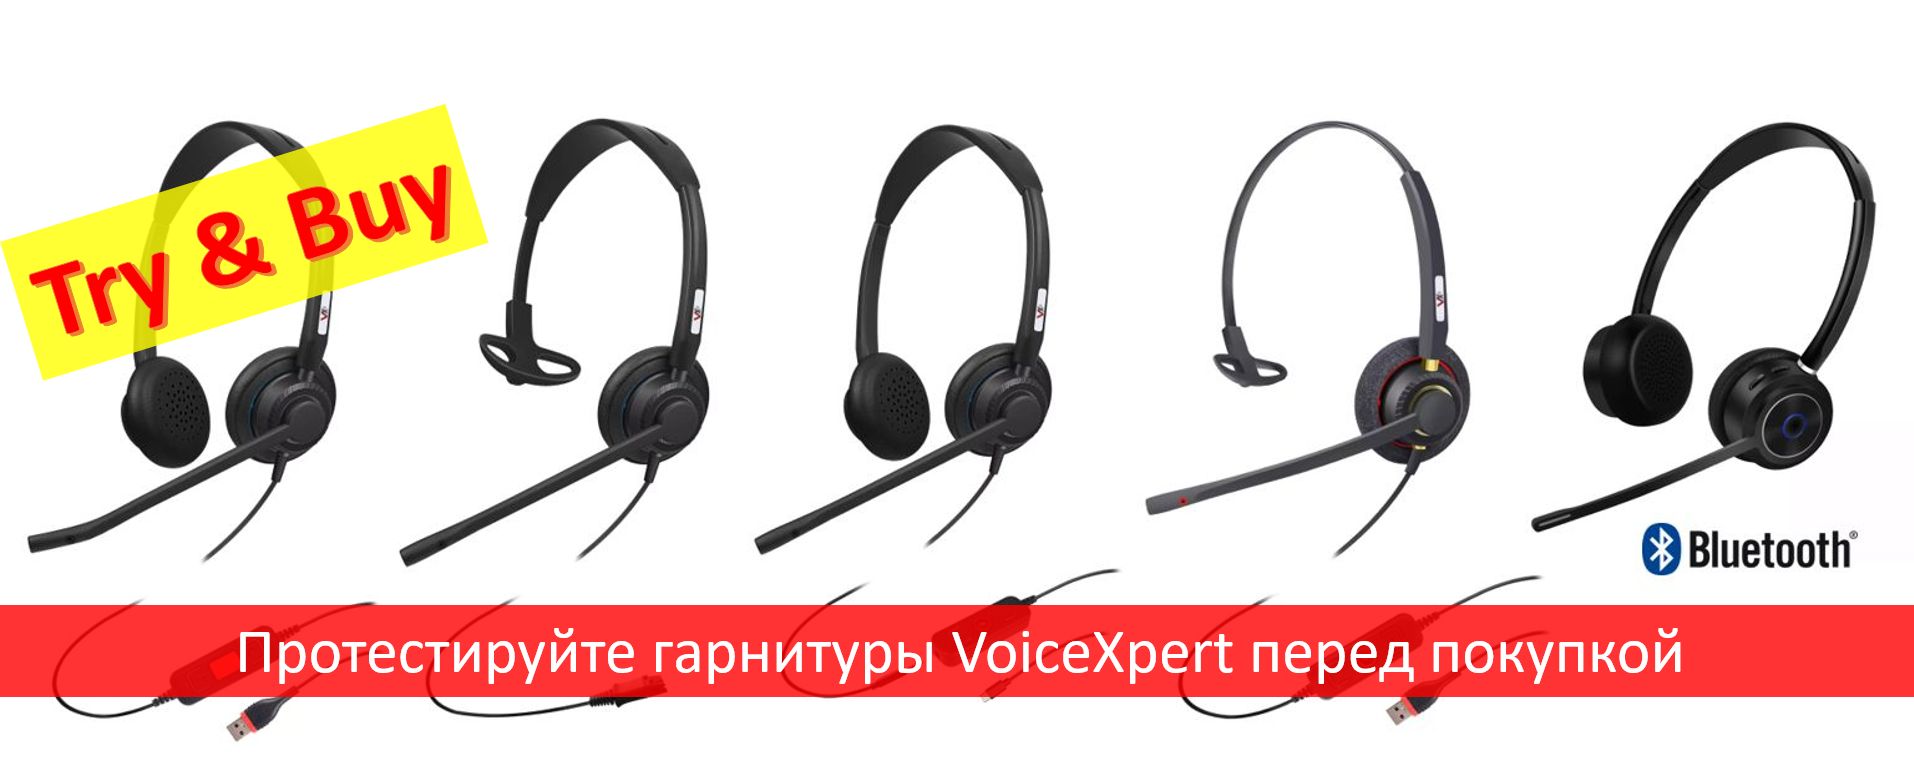 Запрос на бесплатное тестирование гарнитур VoiceXpert